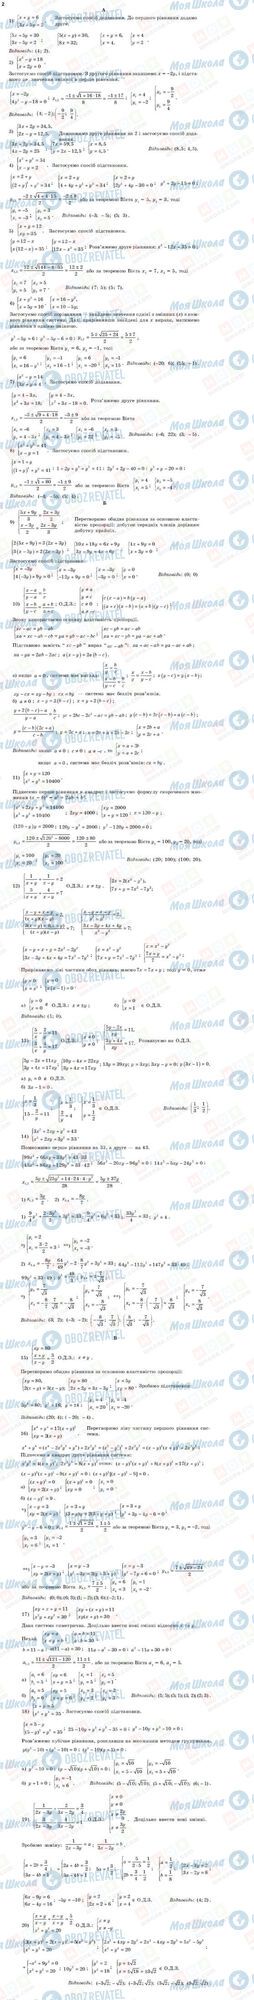 ГДЗ Алгебра 11 класс страница 2